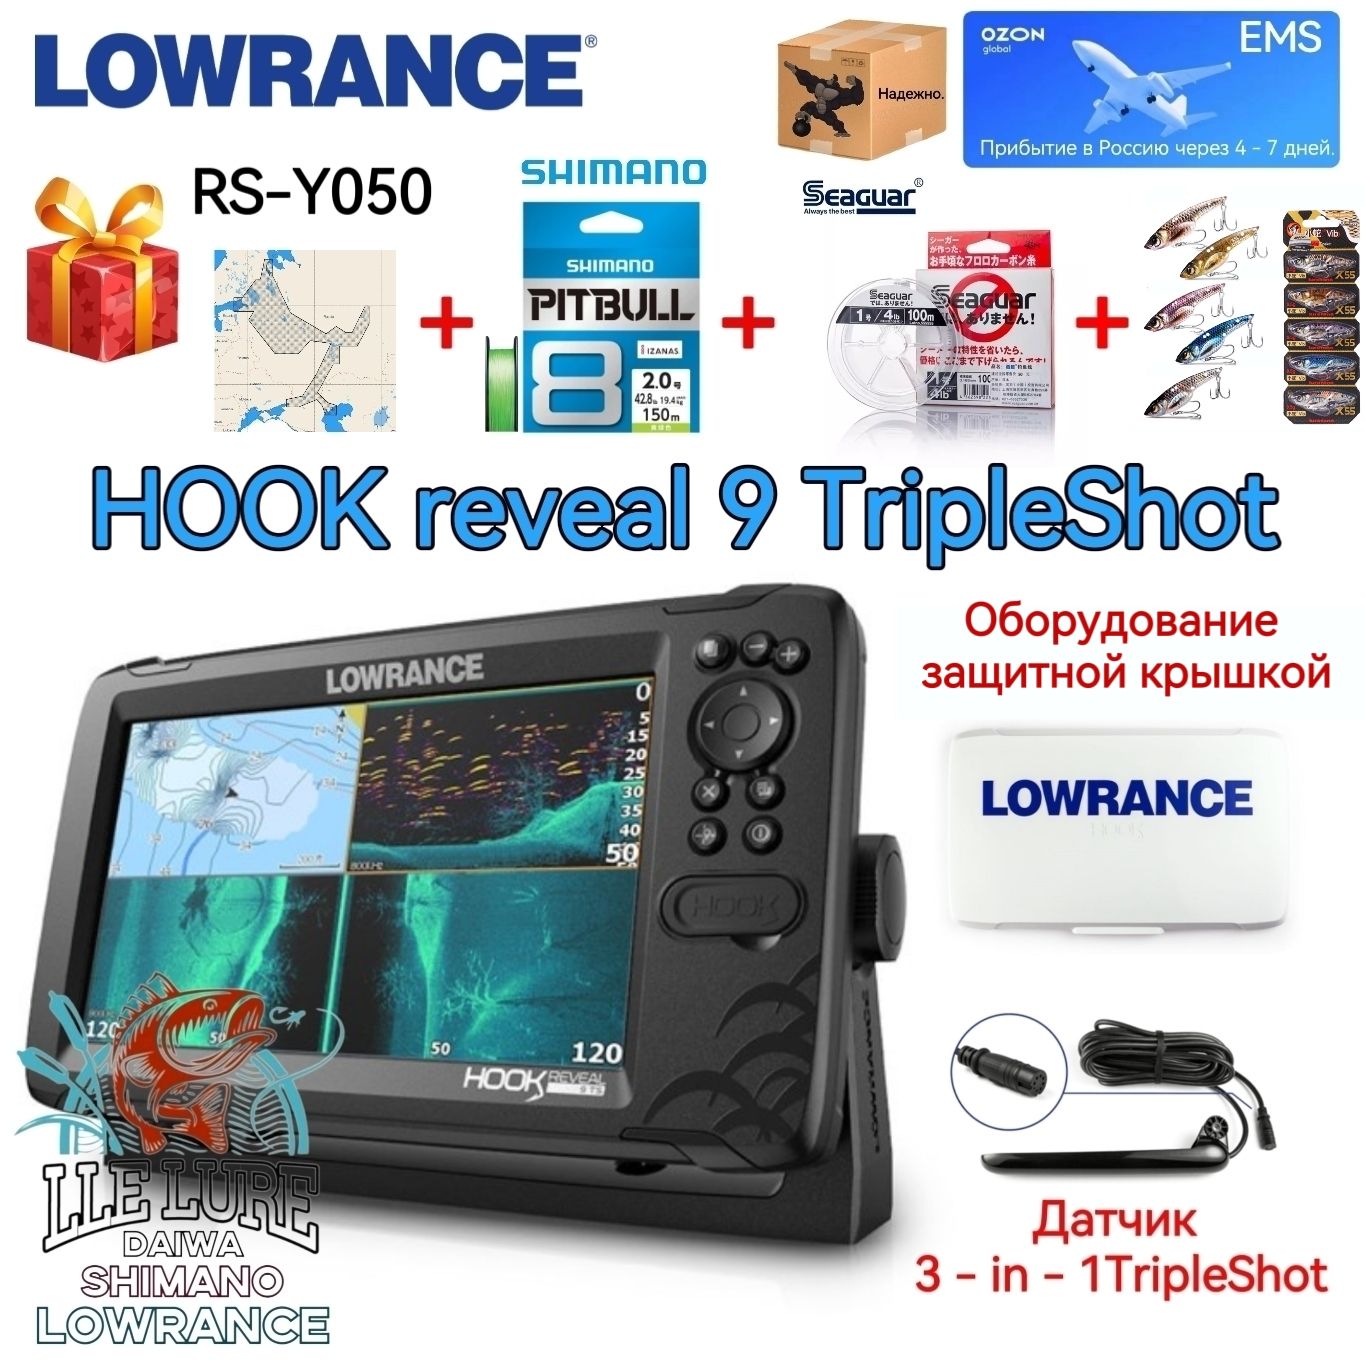 Эхолот Lowrance Hook Reveal 9 tripleshot ROW(крышка-козырёк+ карта) -  купить с доставкой по выгодным ценам в интернет-магазине OZON (1304073480)